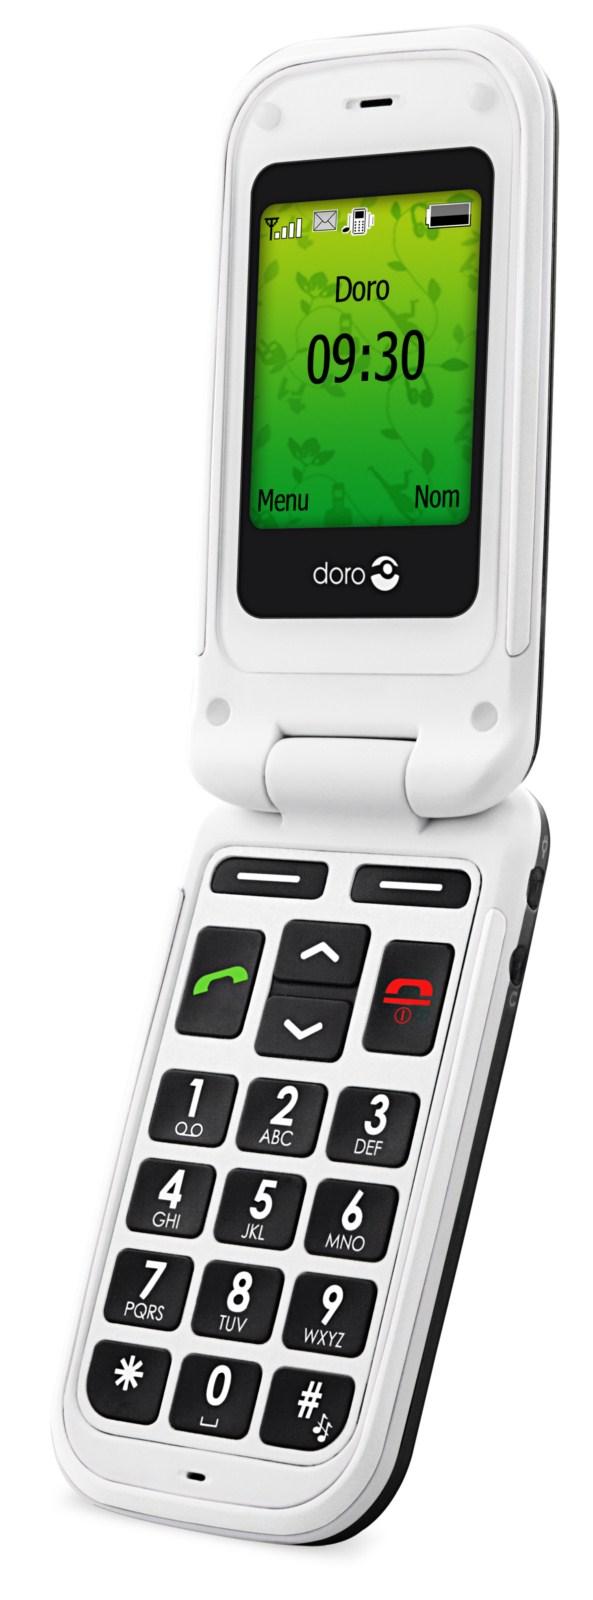 Le téléphone pour séniors Doro Phone Easy 410 distribué par SFR